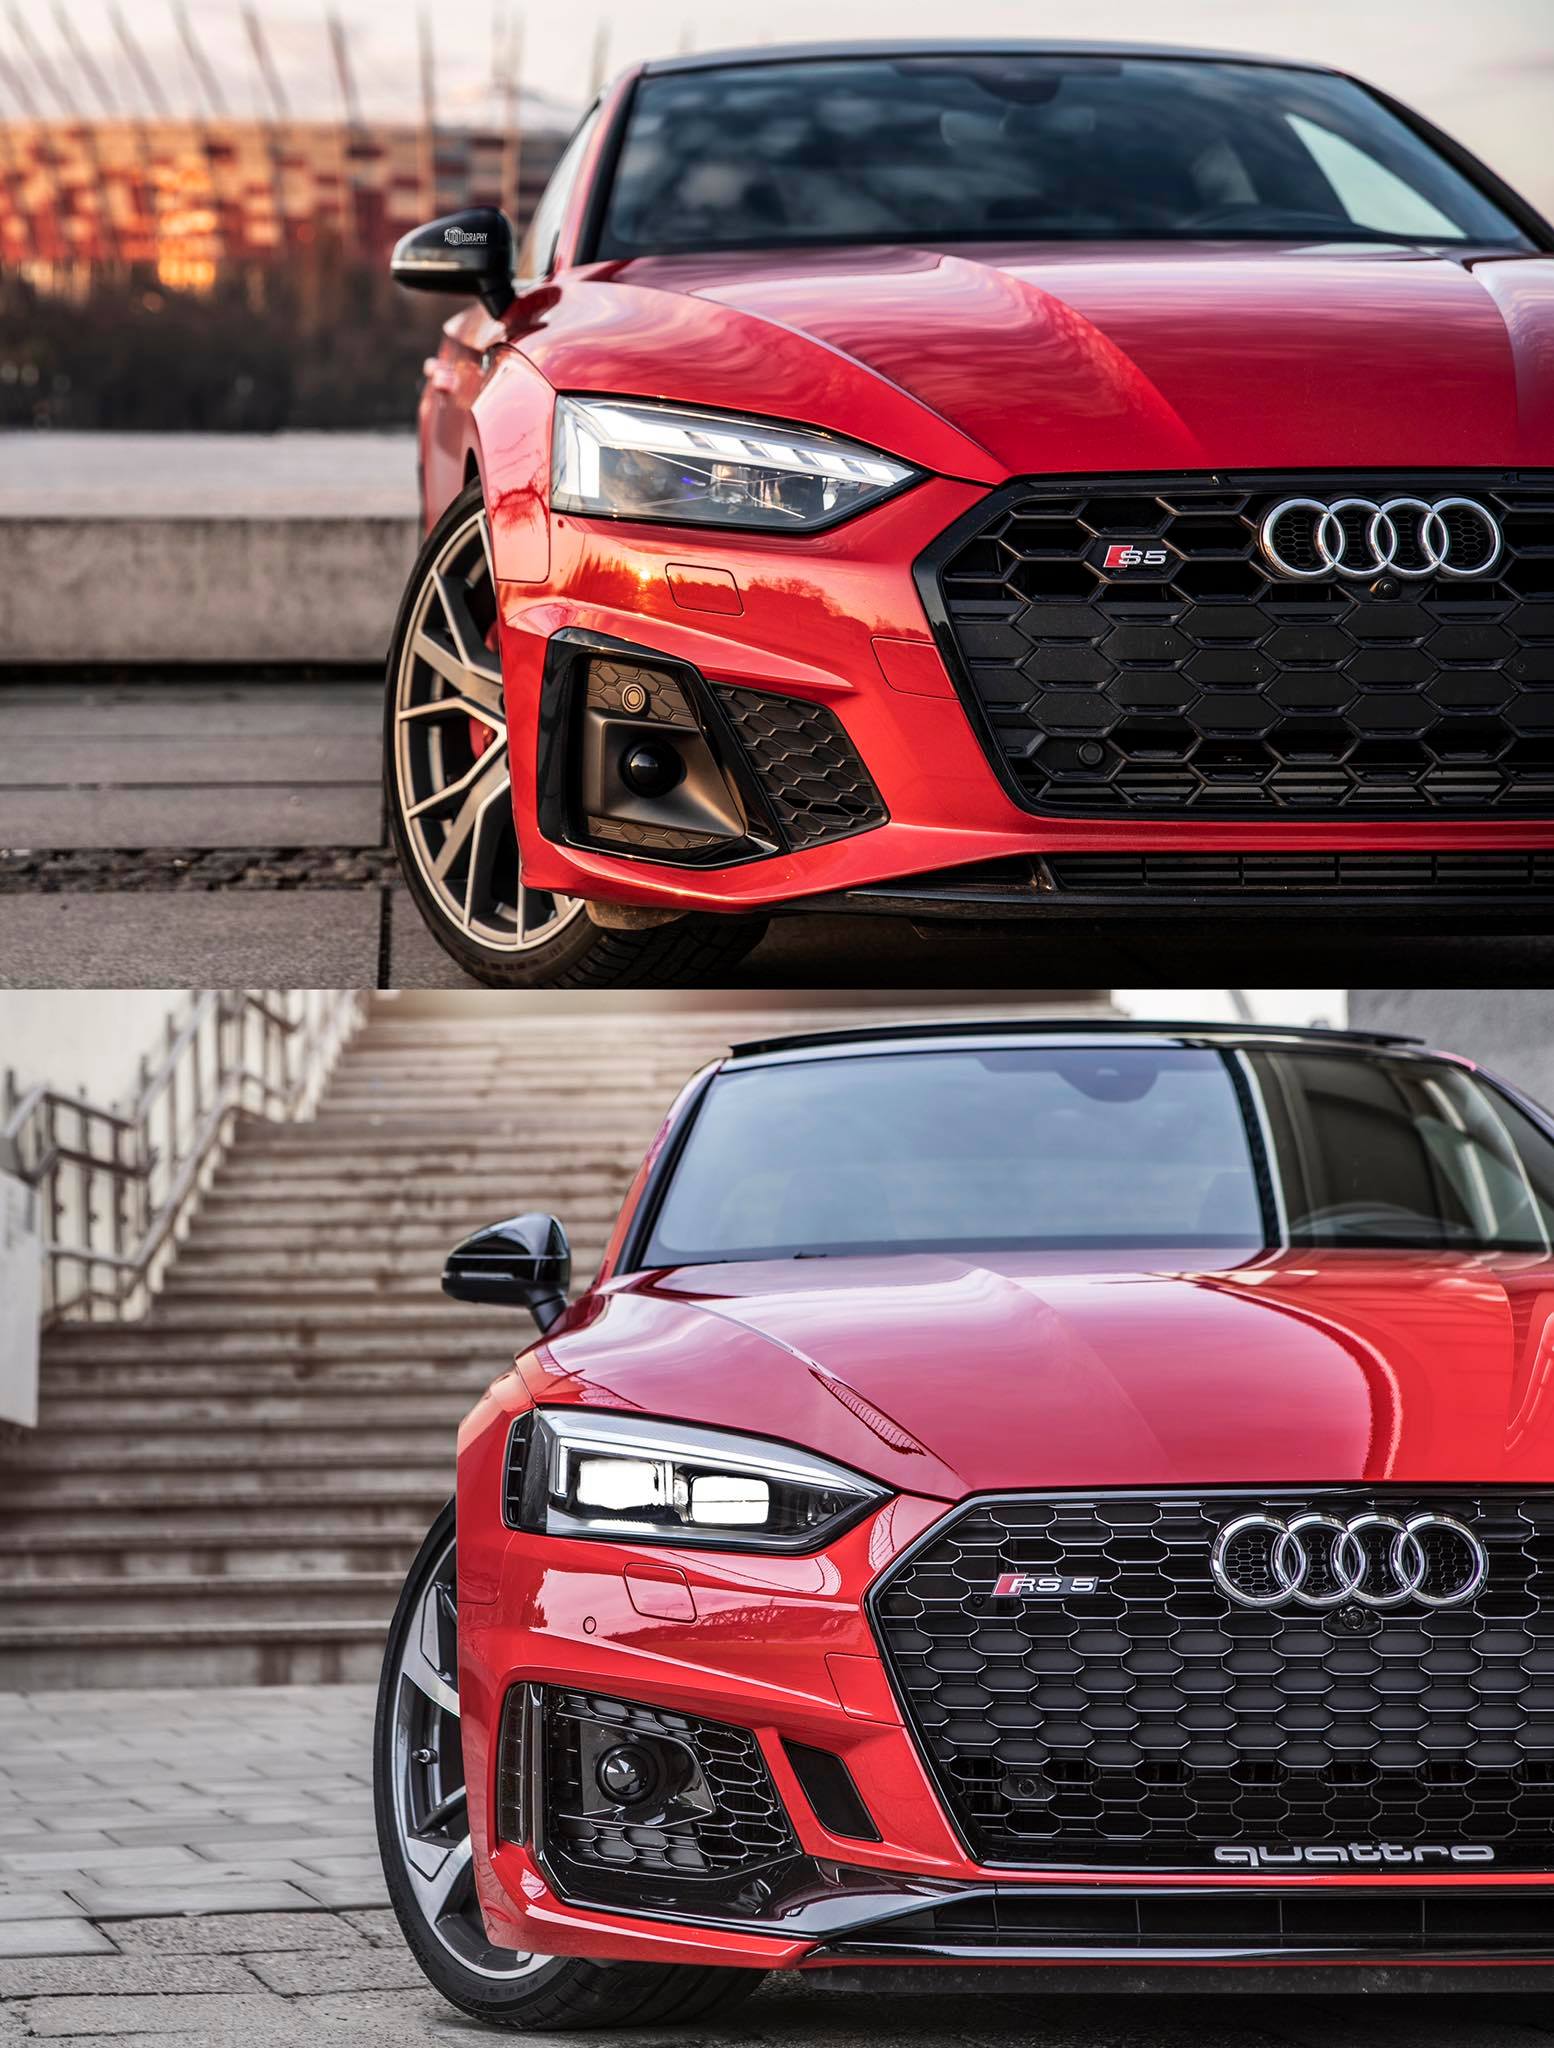 Audi España on Twitter: "Audi S5 vs. RS5. Dos estilos con un frontal actitud 100% deportiva ¿Qué diseño te seduce más? ❤️ Si el #S5 RT Si eres